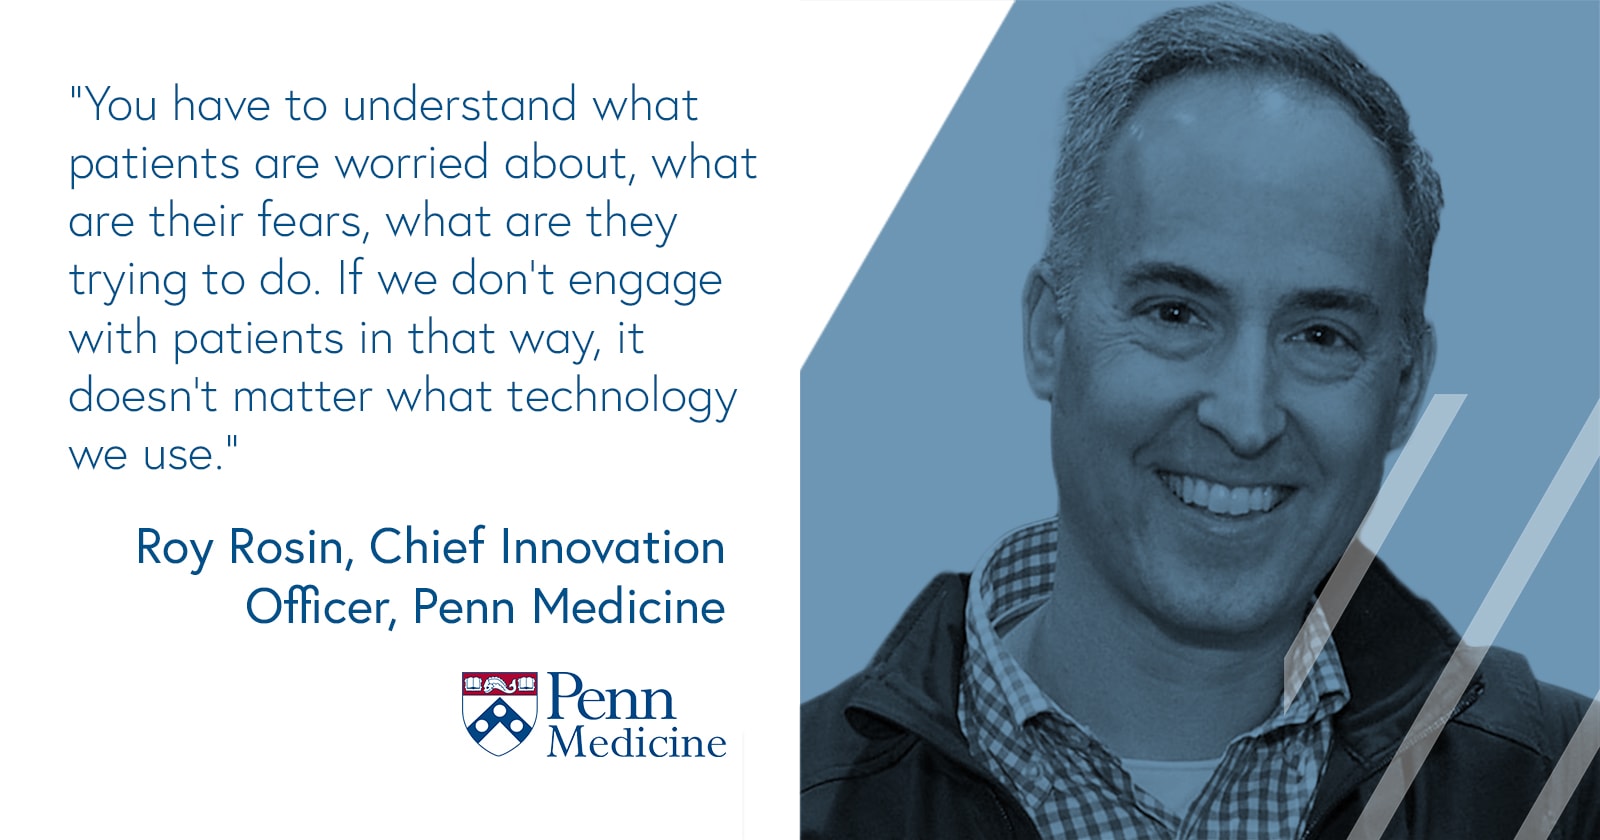 Roy Rosin, Chief Innovation Officer, Penn Medicine